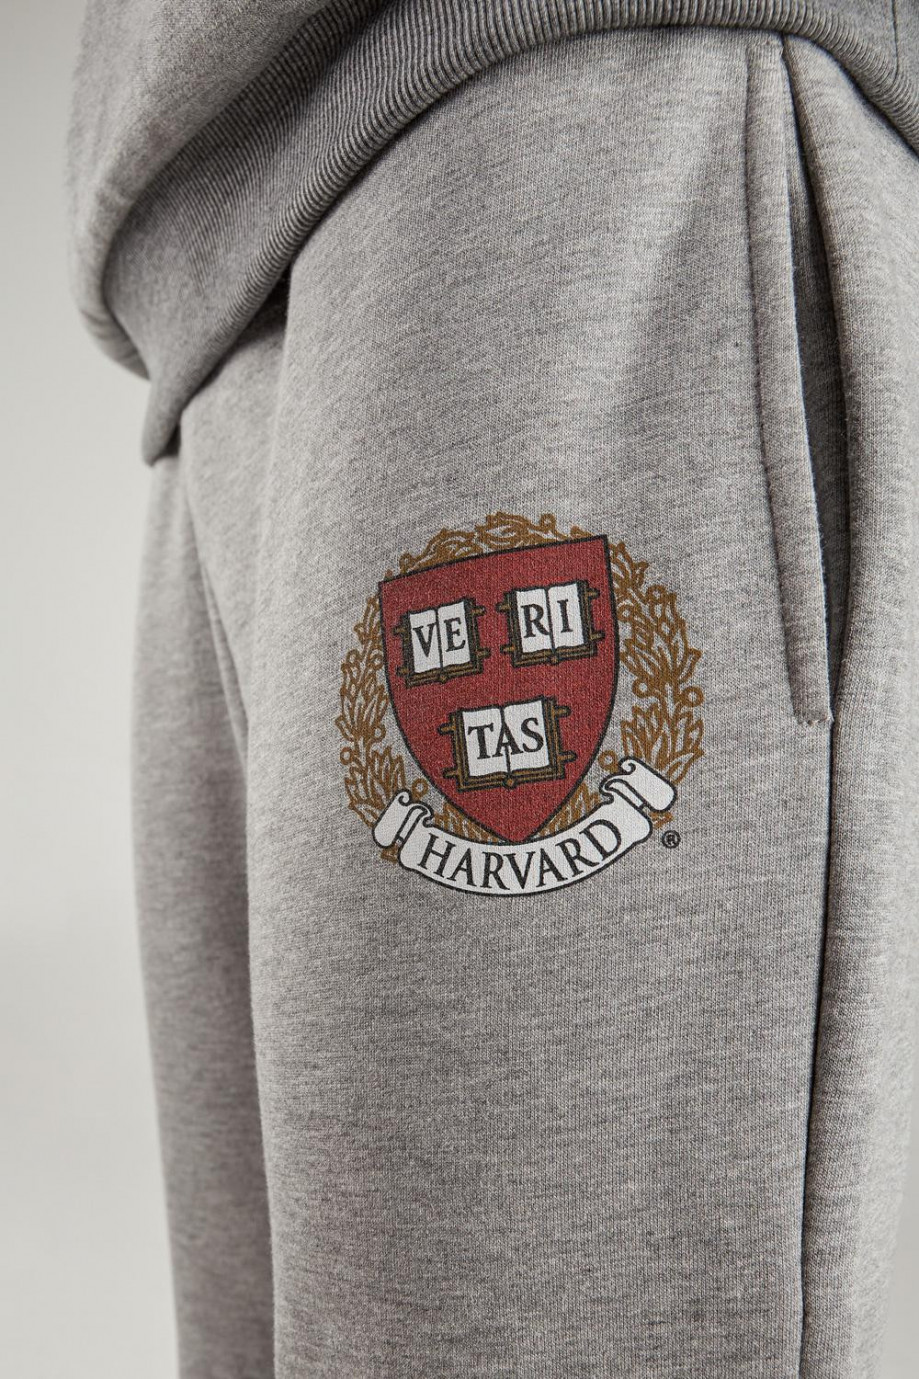 Pantalón jogger gris con diseño college de Harvard en frente